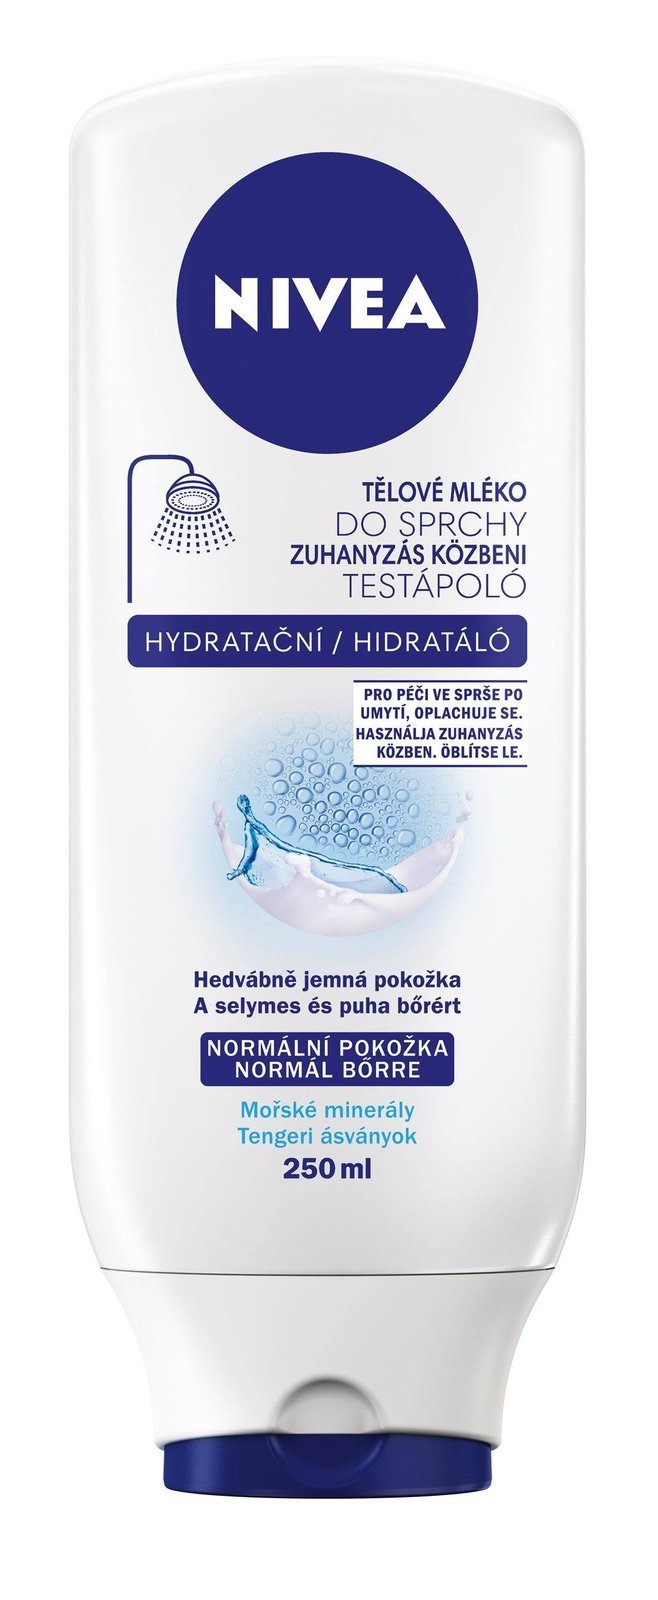 Hydratační tělové mleko do sprchy, Nivea, 250 ml za 115 Kc.